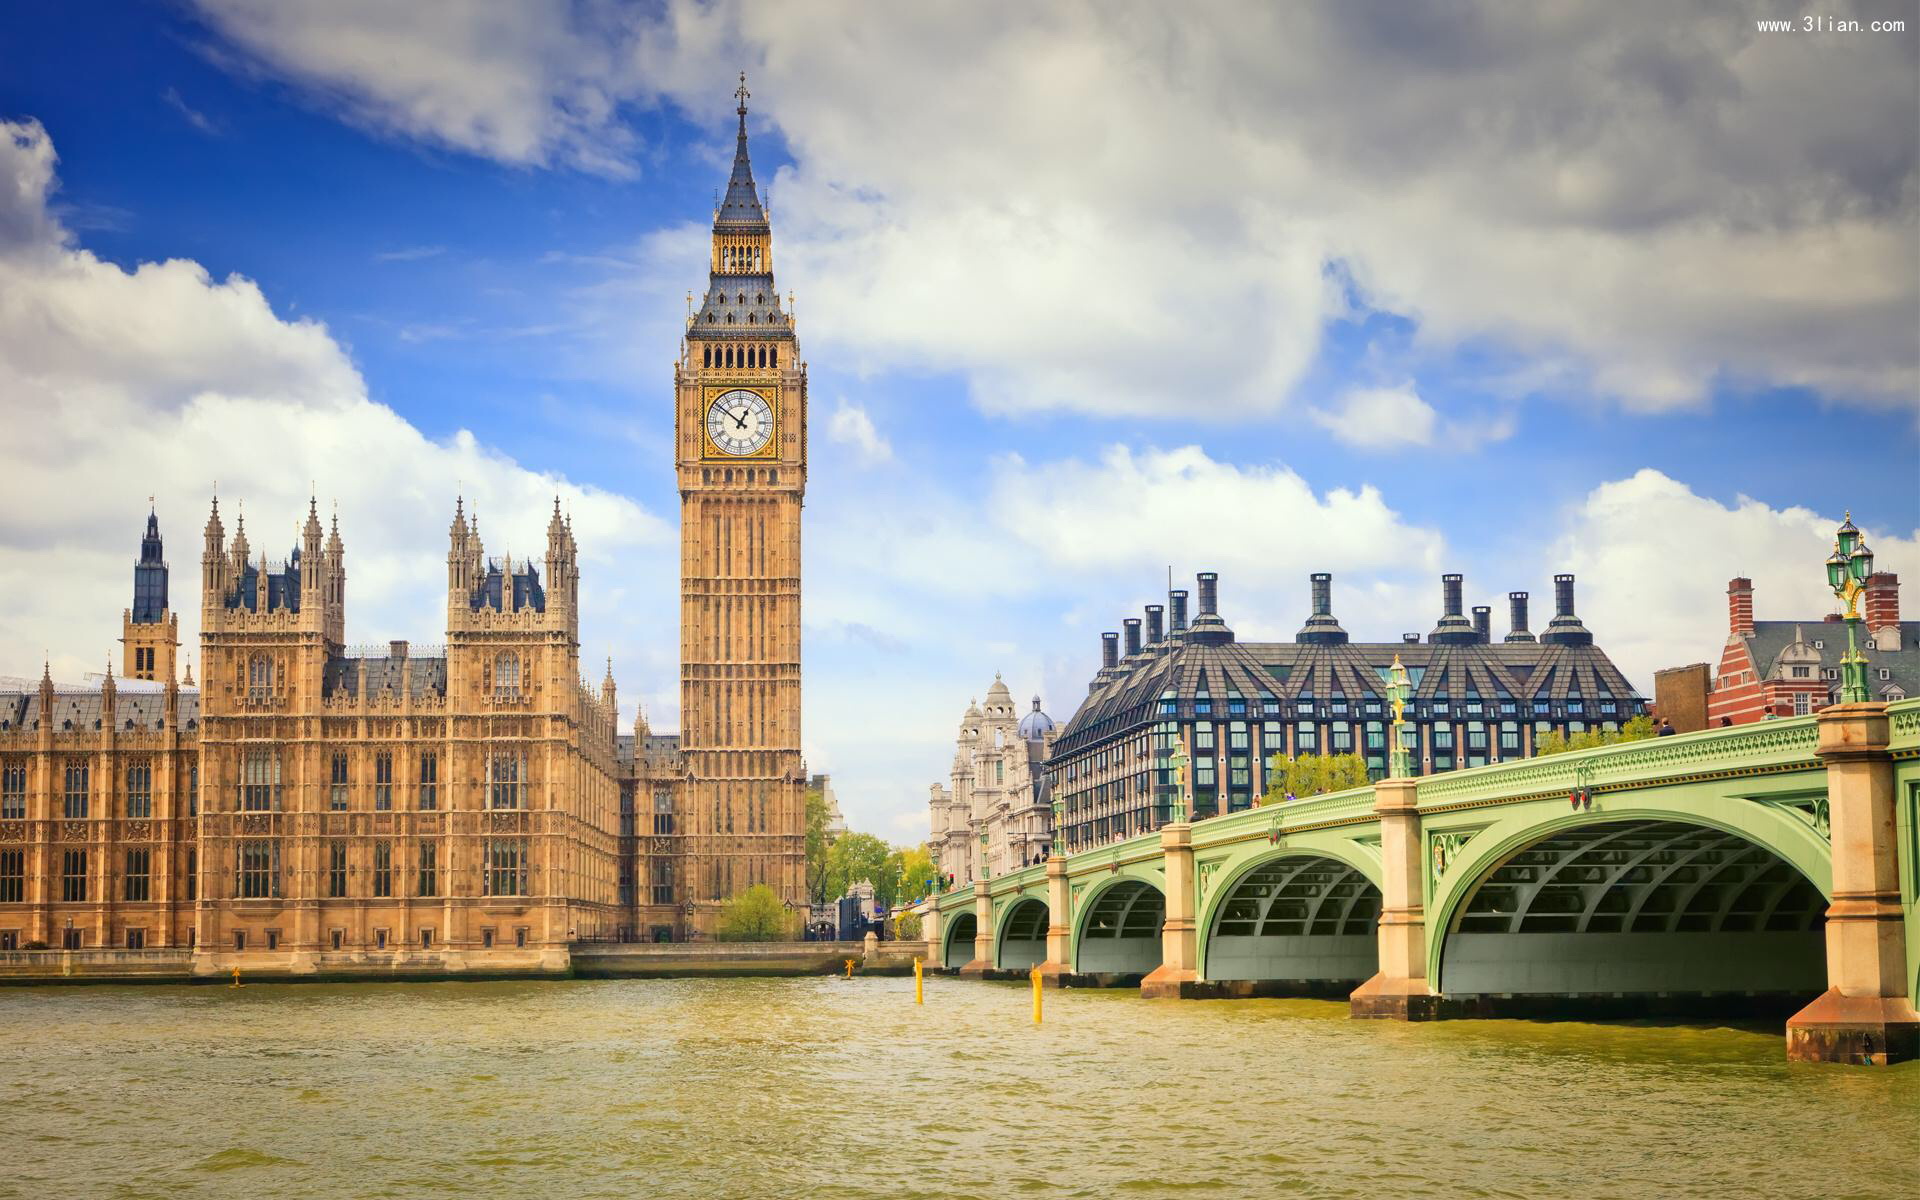 英国伦敦著名古钟或称大本钟(big ben),即威斯敏斯特宫报时钟(坐标:51